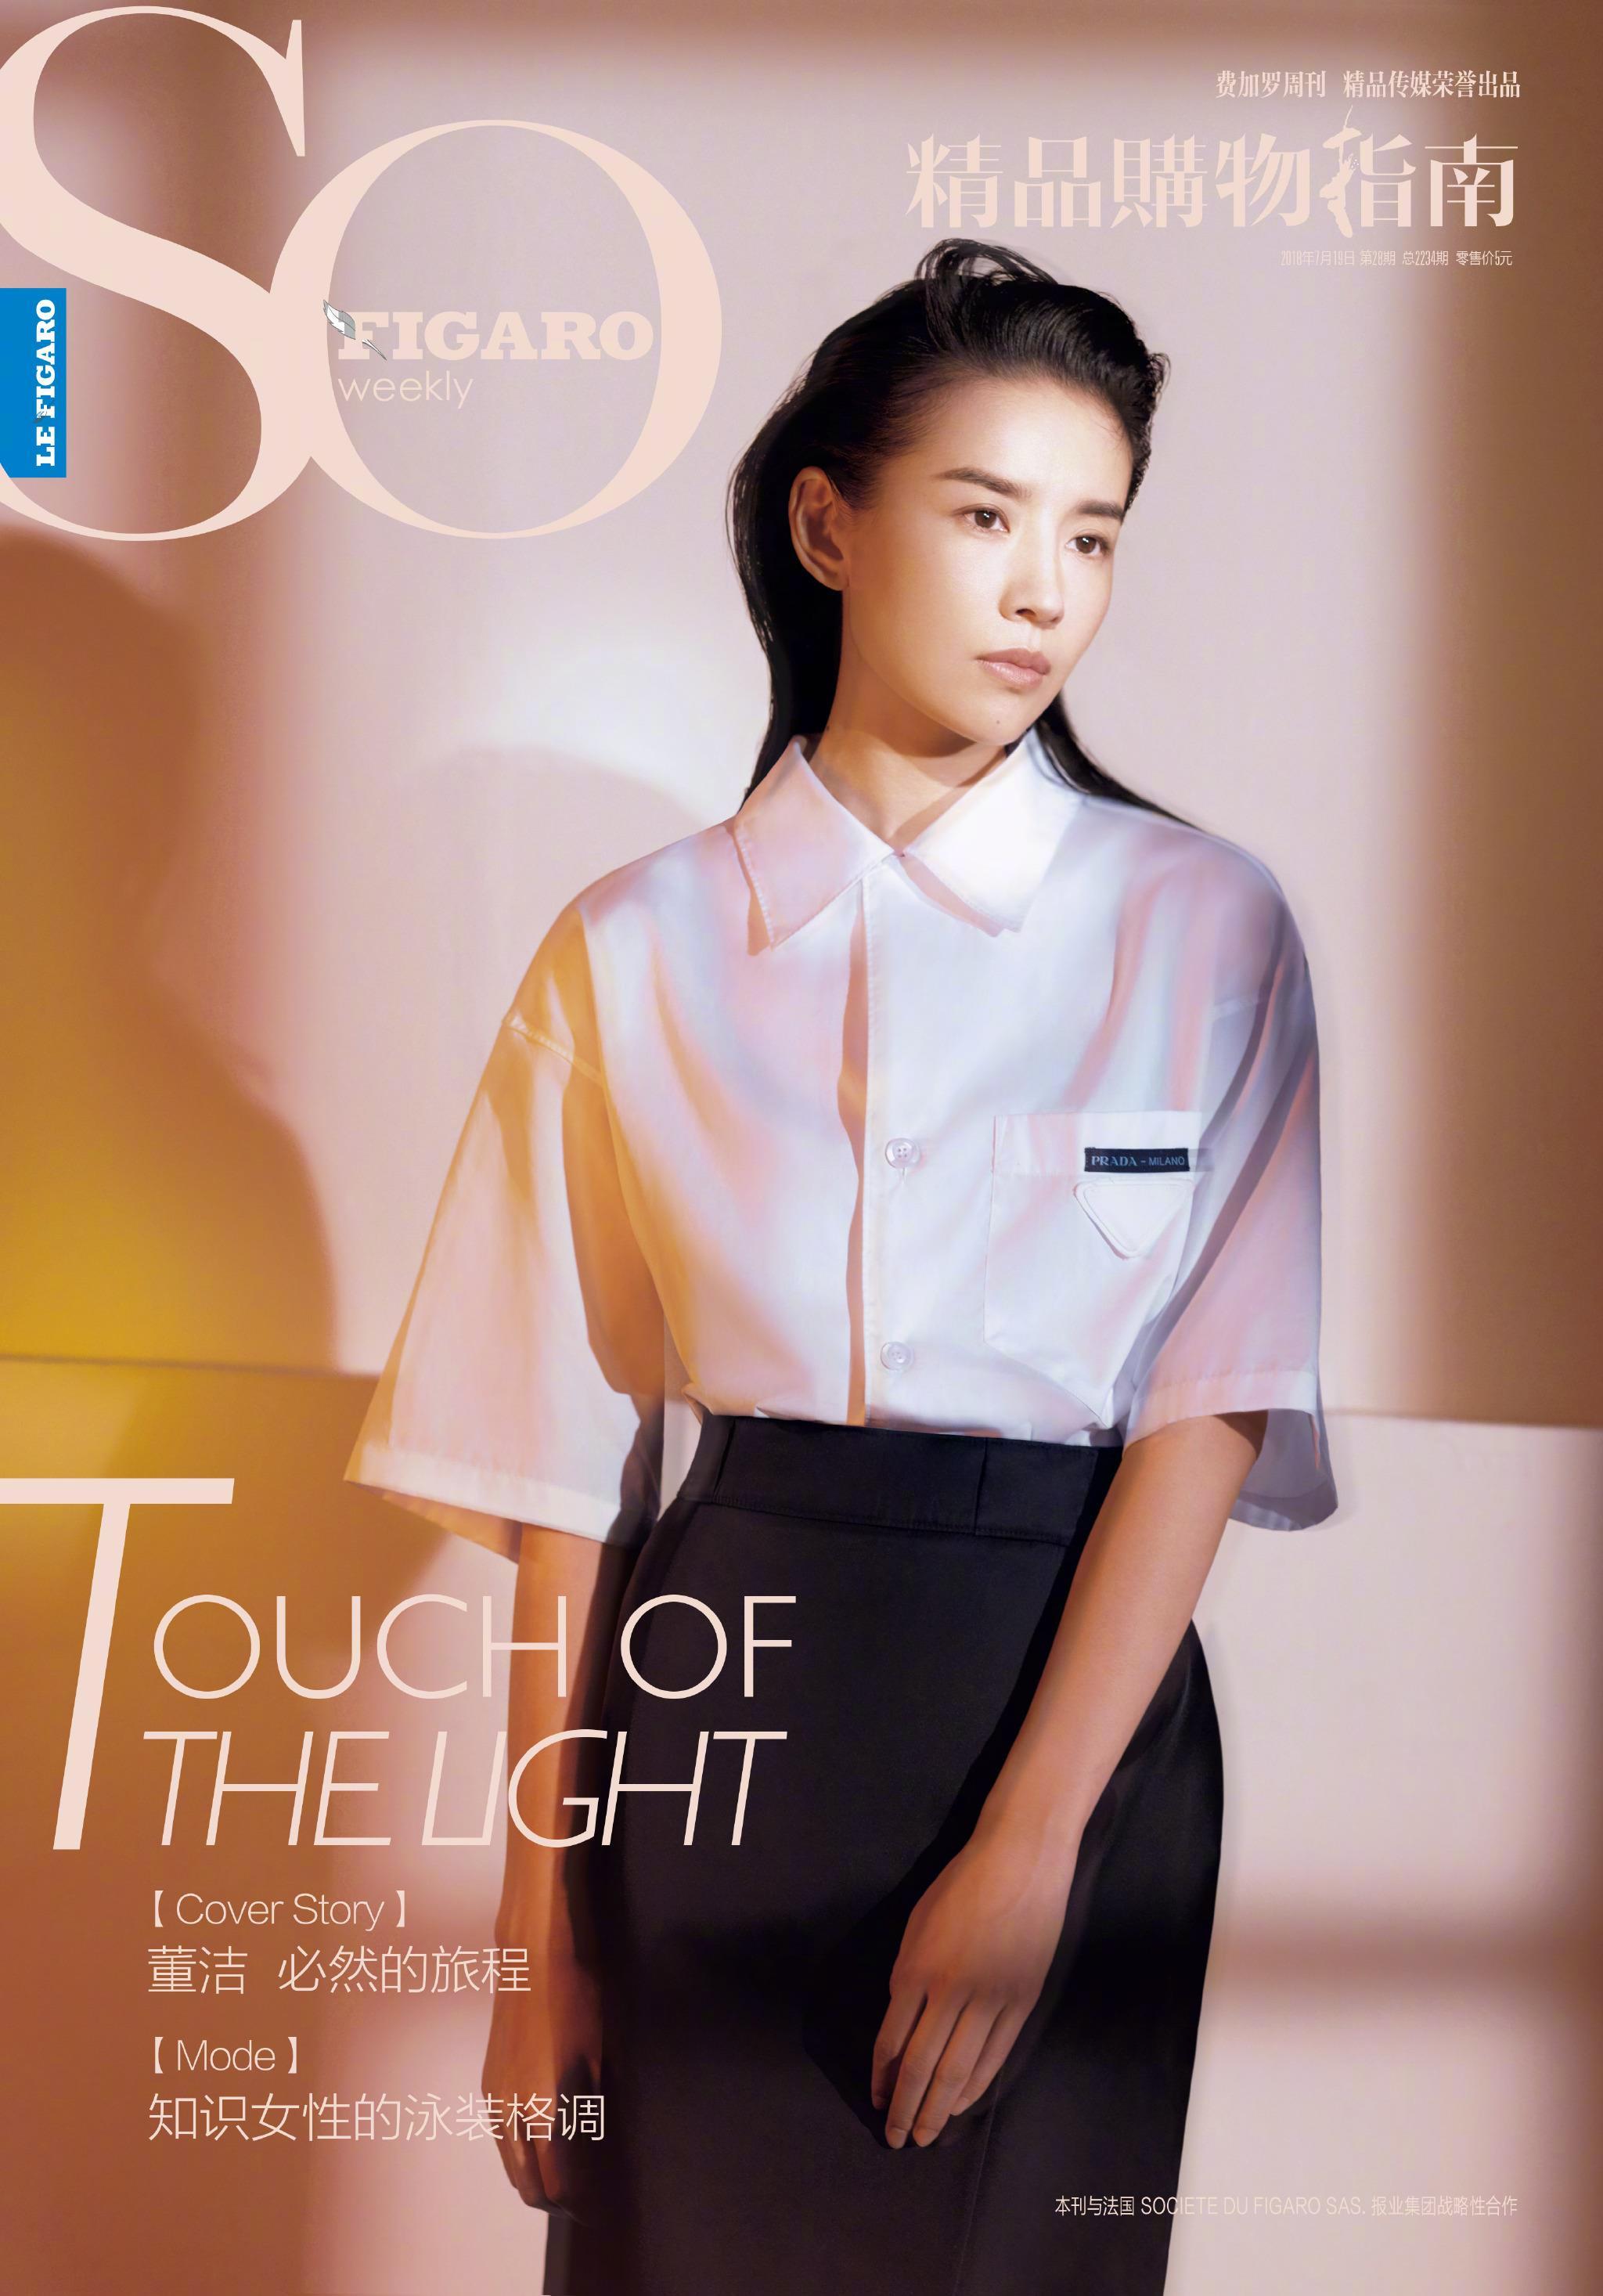 《SoFigaro》7月新刊, 董洁 身穿Prada服饰登封 散发着成熟优雅的魅力,